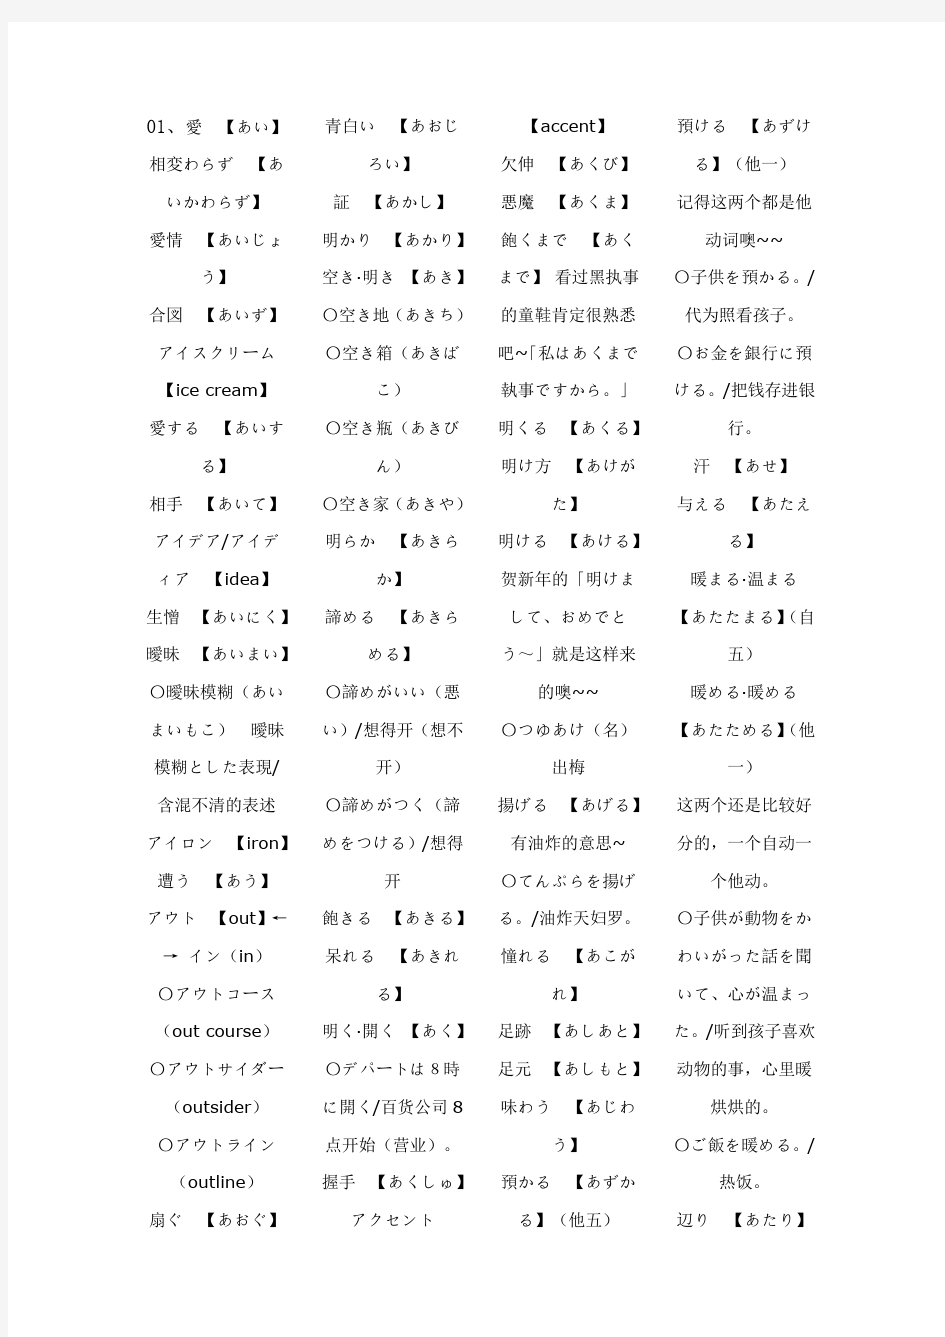 有声记忆日本语能力测试10000词(2级部分) pdf